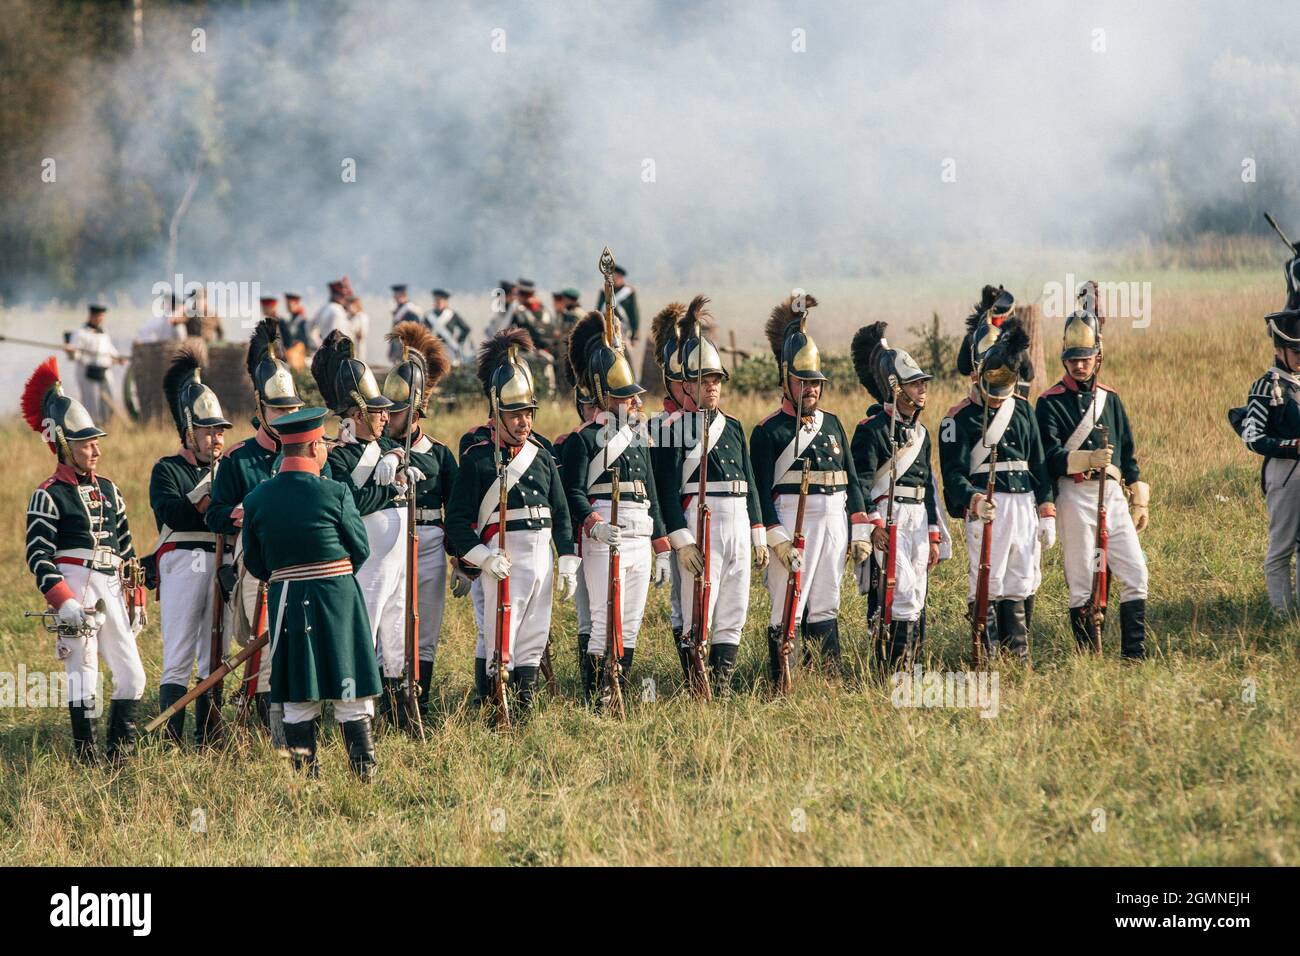 BORODINO, RUSSIA - Sep 01, 2018: The reenactment of the Battle of Borodino in Russia Stock Photo